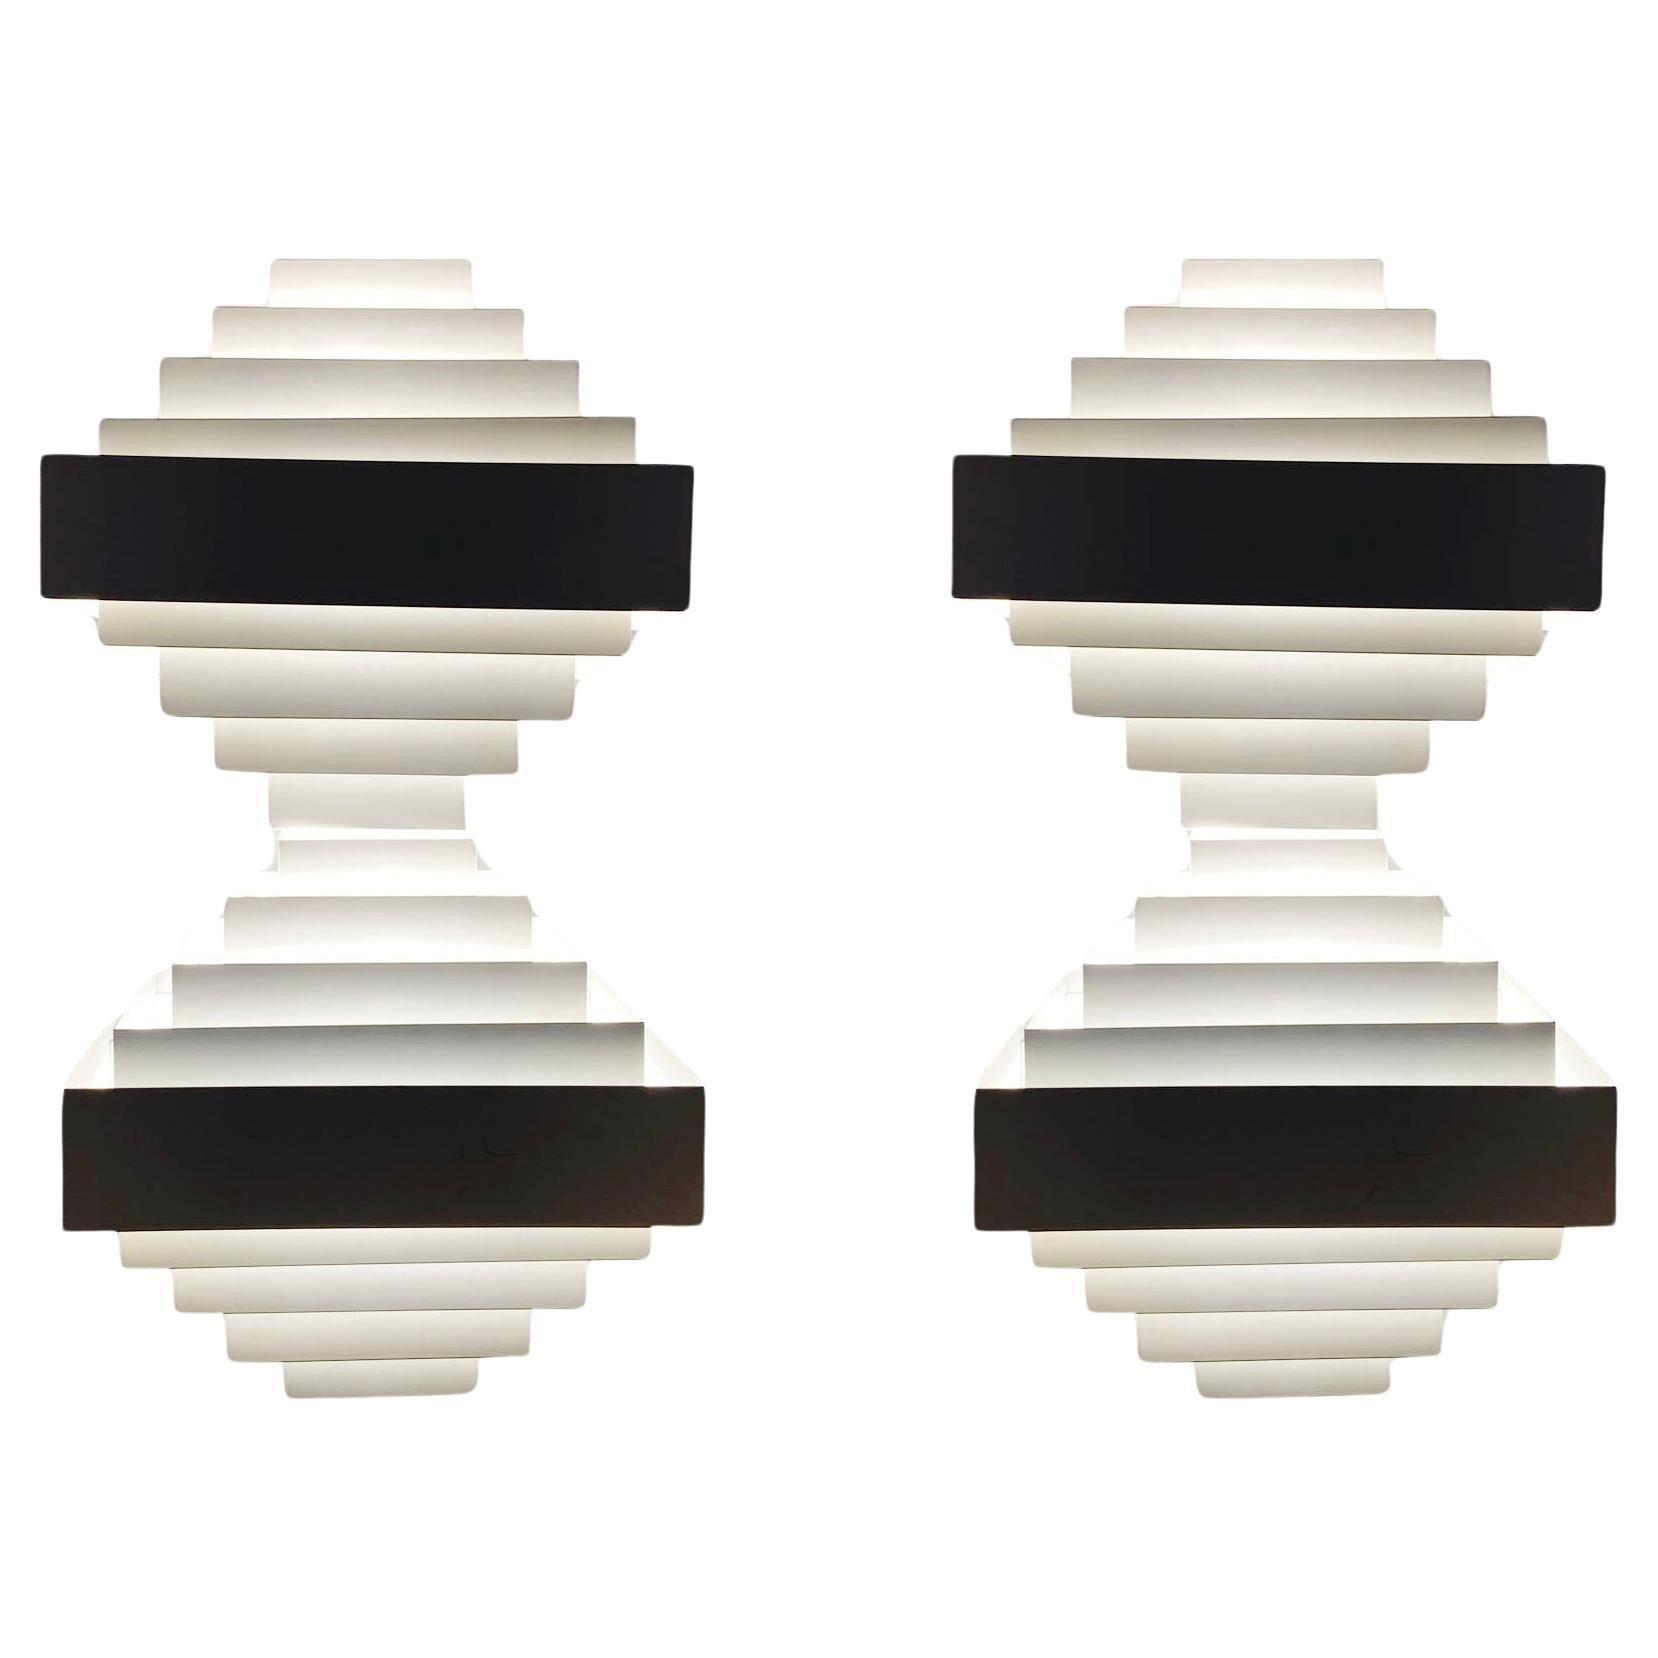 Geometrisches Paar Wandleuchten aus weißem Metall von Spectral, Freiburg, Deutschland, 1980er Jahre. Beide Lampen bestehen aus einer doppelten Raute, die aus horizontalen Bändern aus weiß emailliertem Metall gebildet wird, wodurch das Licht in